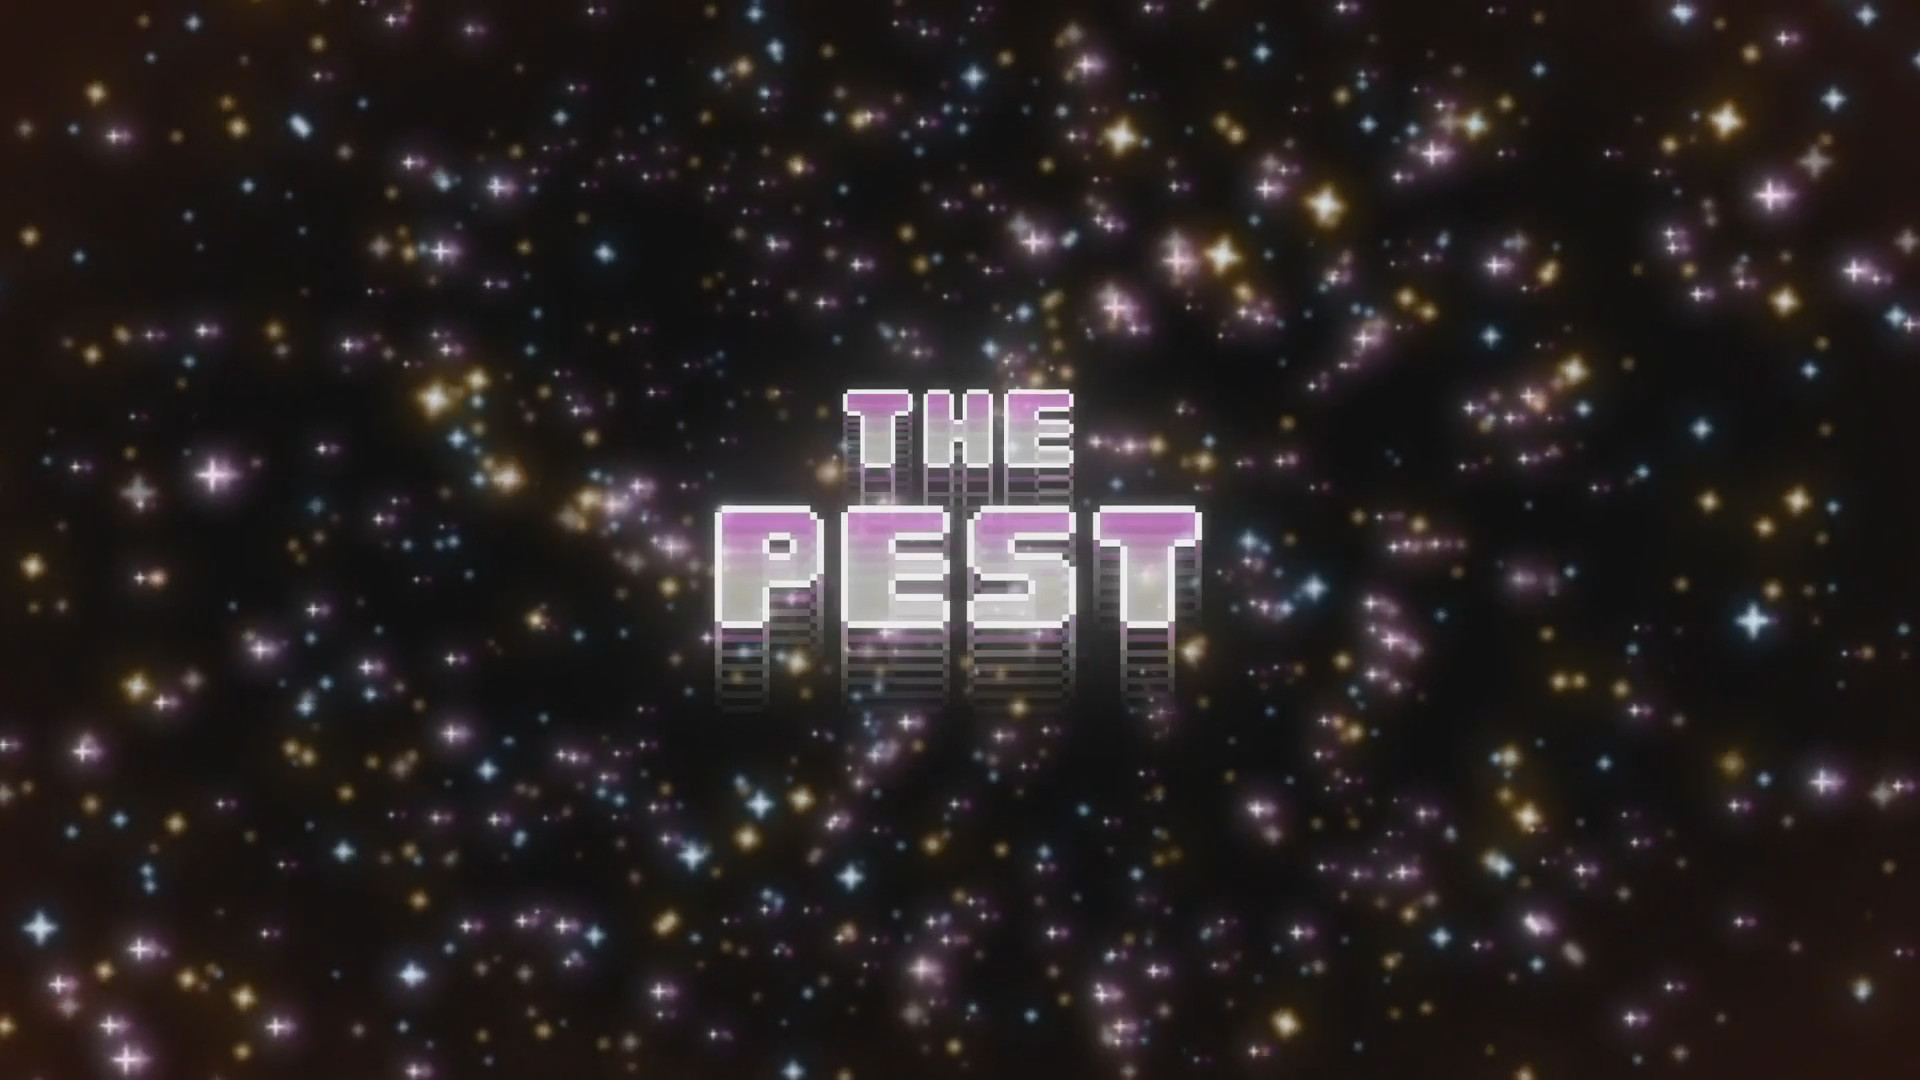 The Pest